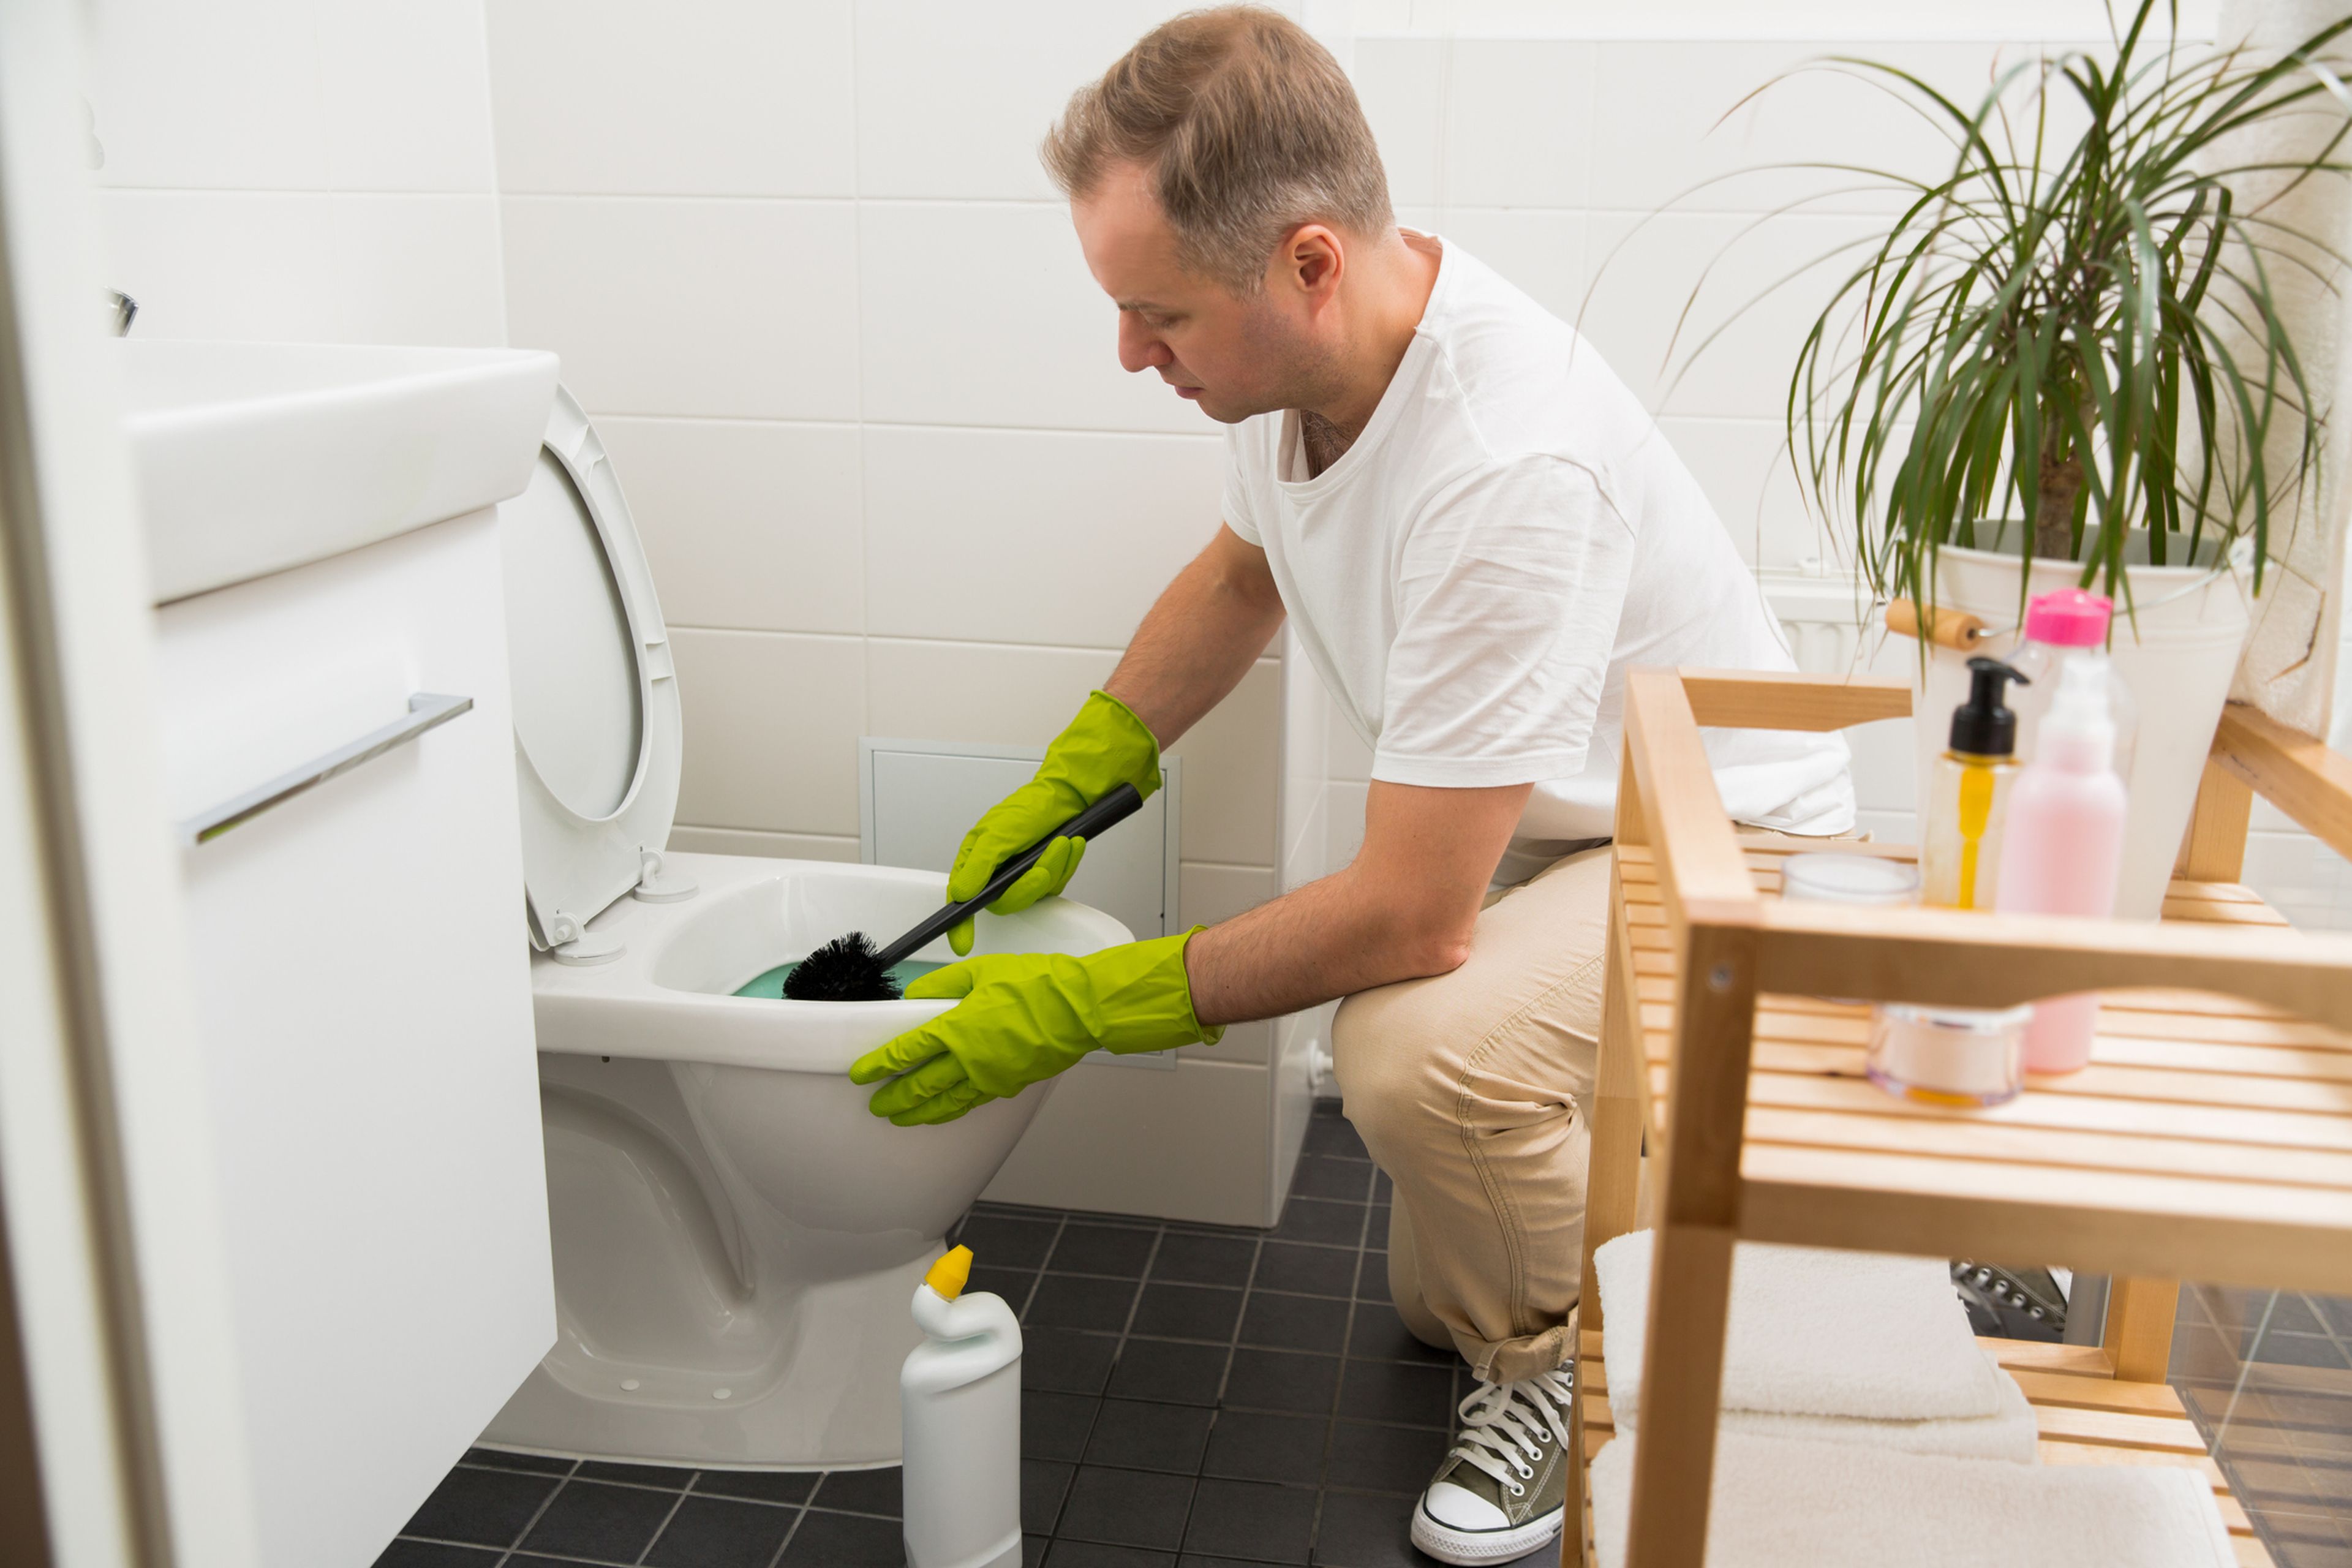 Cómo limpiar y desinfectar tu cuarto de baño - Emplea Hogar